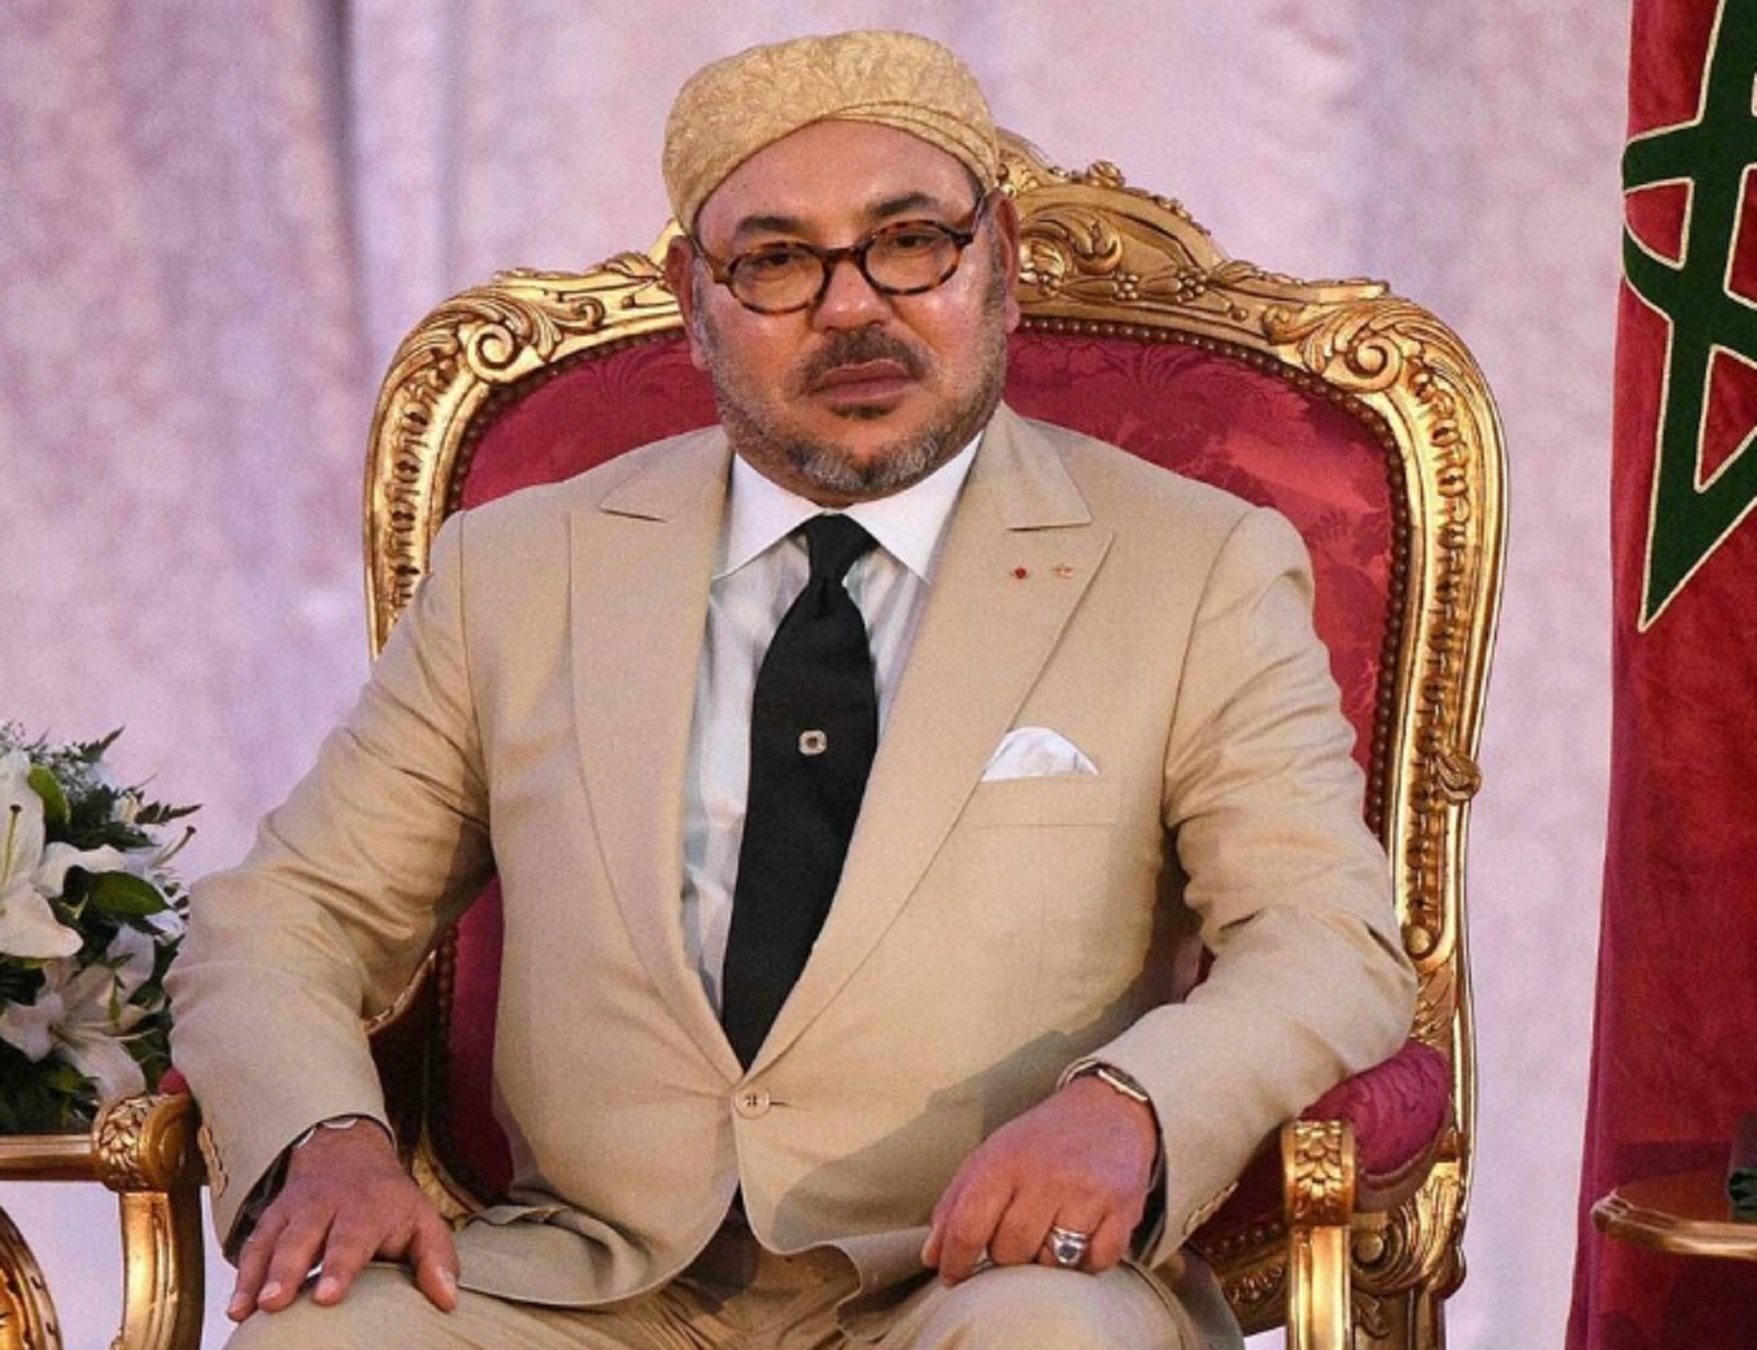 El Rey de Marruecos le paga el abogado a un cantante acusado de violación